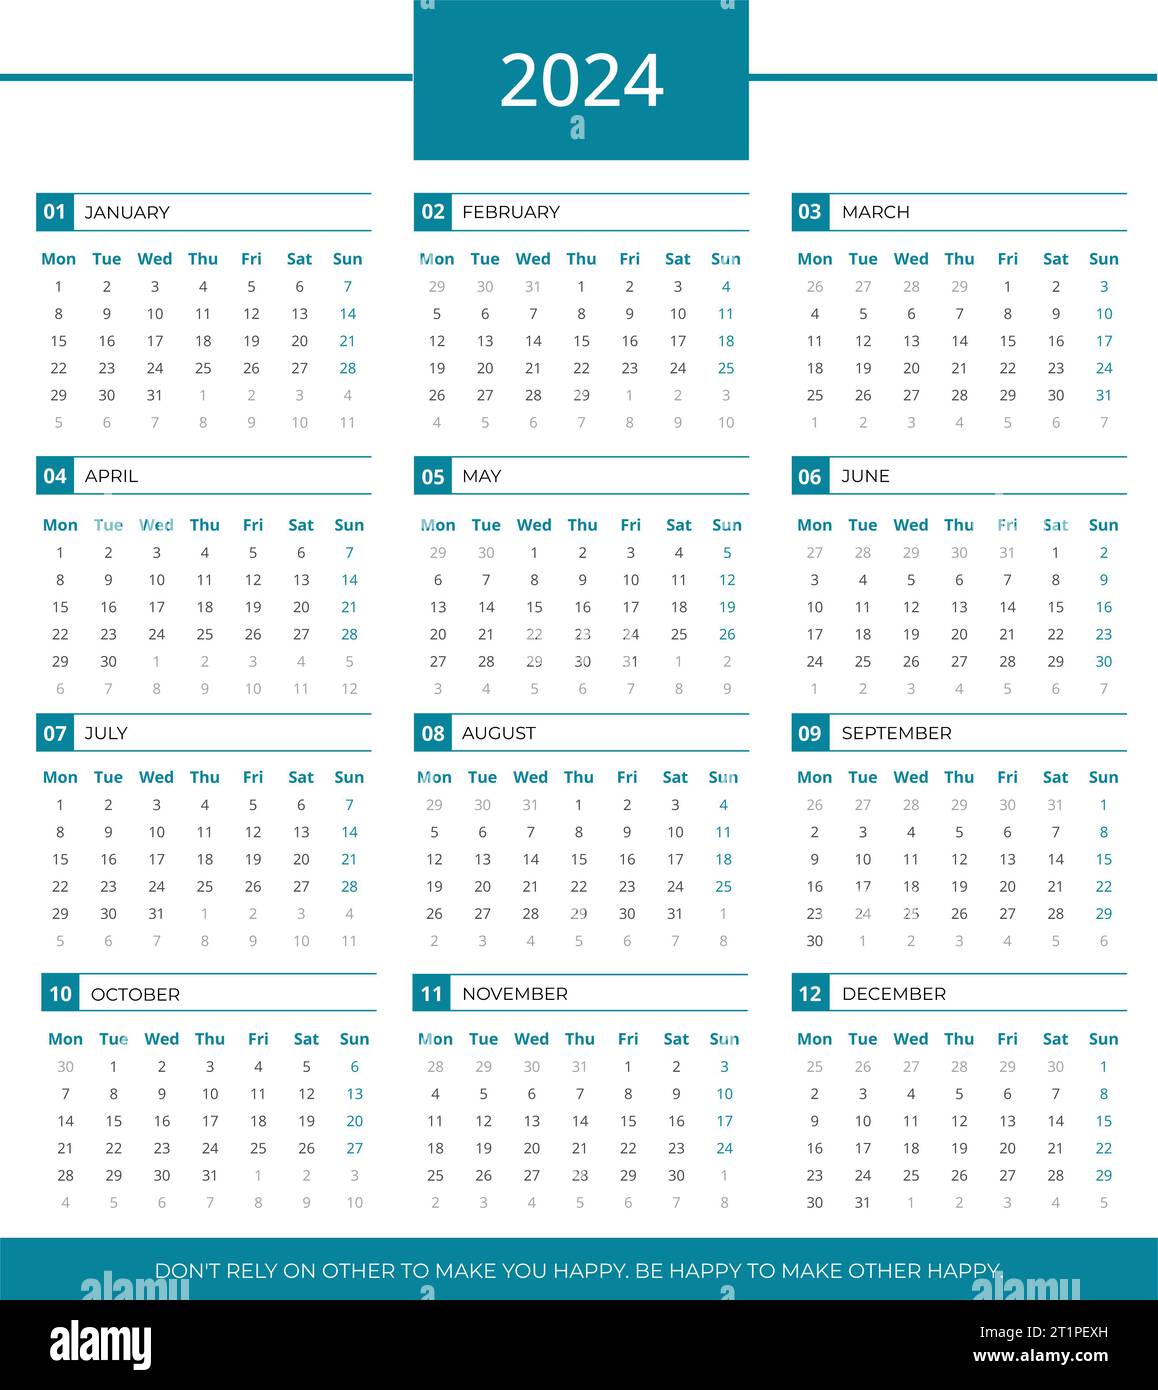 Kalender für 2024, 2024 Kalendervorlage, mit der Sie Ihre Kalenderentwürfe ganz einfach gestalten können. Einfaches Calendar 2024-Design Stockfoto